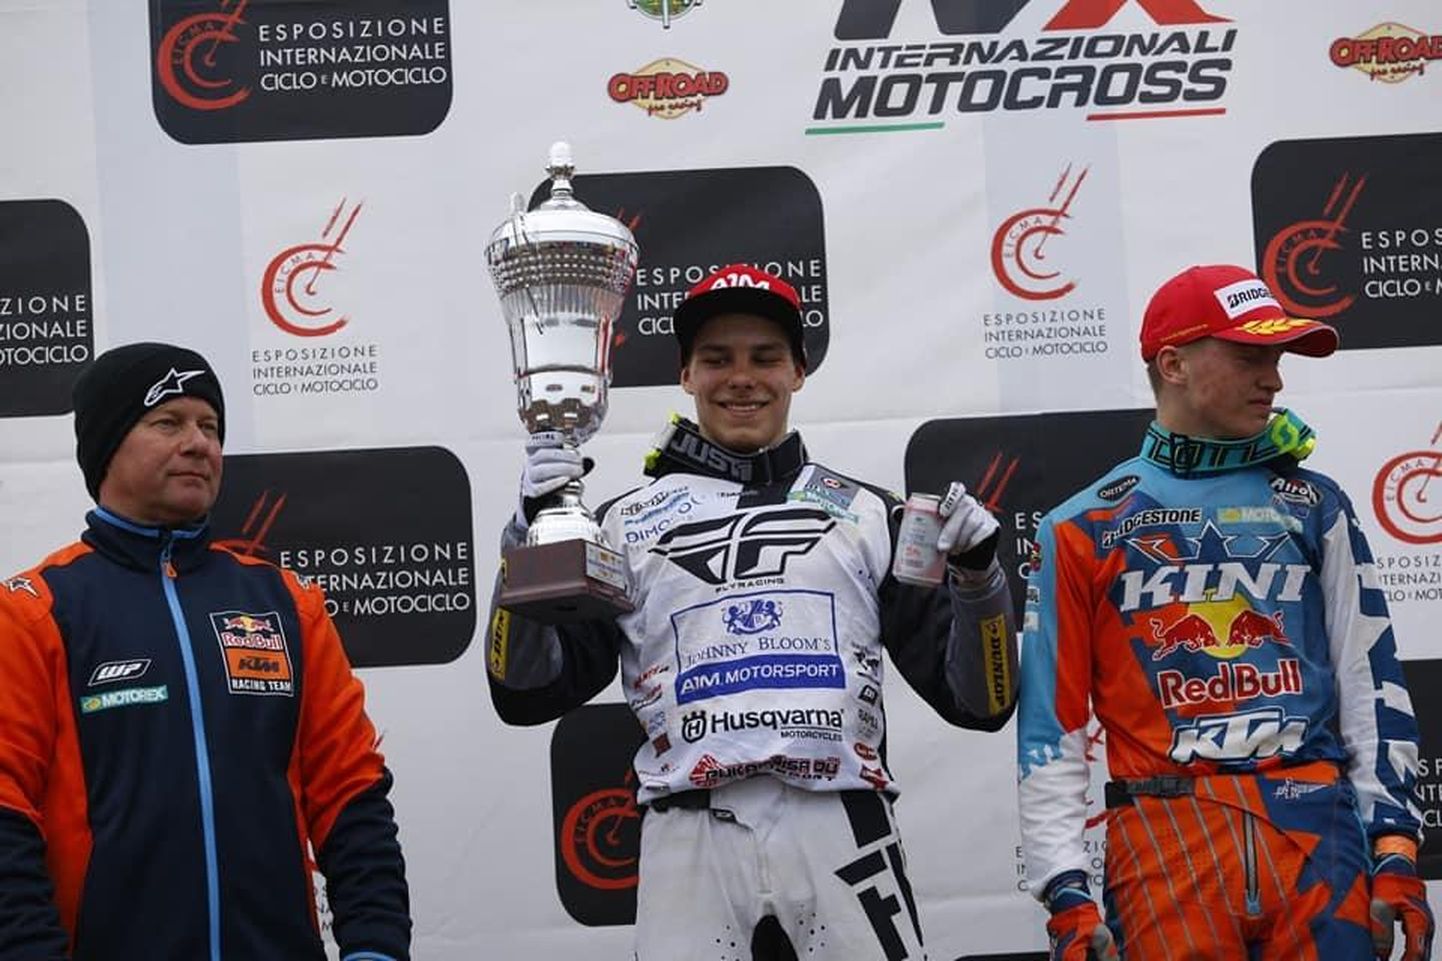 Pärnu motoklubi tulevikulootus Jörgen-Matthias Talviku võitis Itaalia meistrivõistluste viimasel etapil teise auhinna.